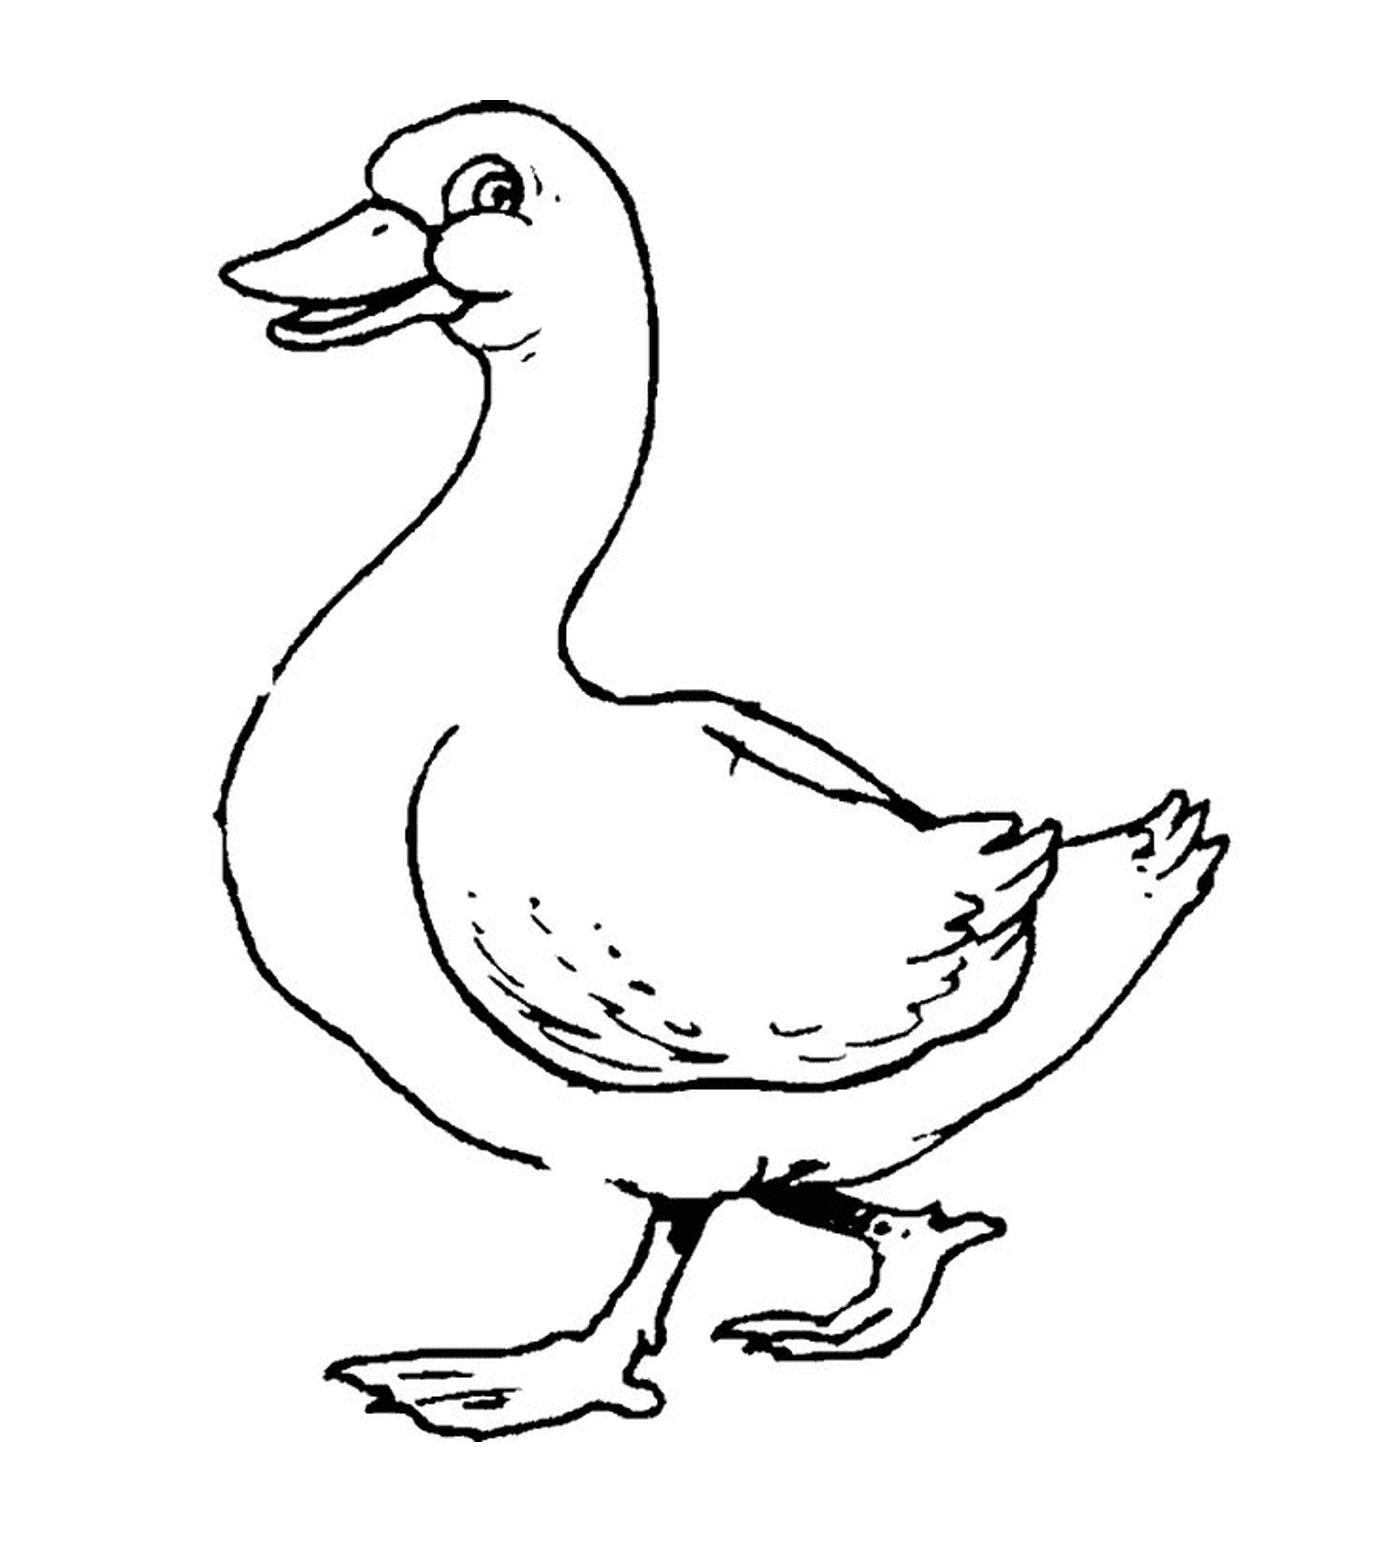  A duck 